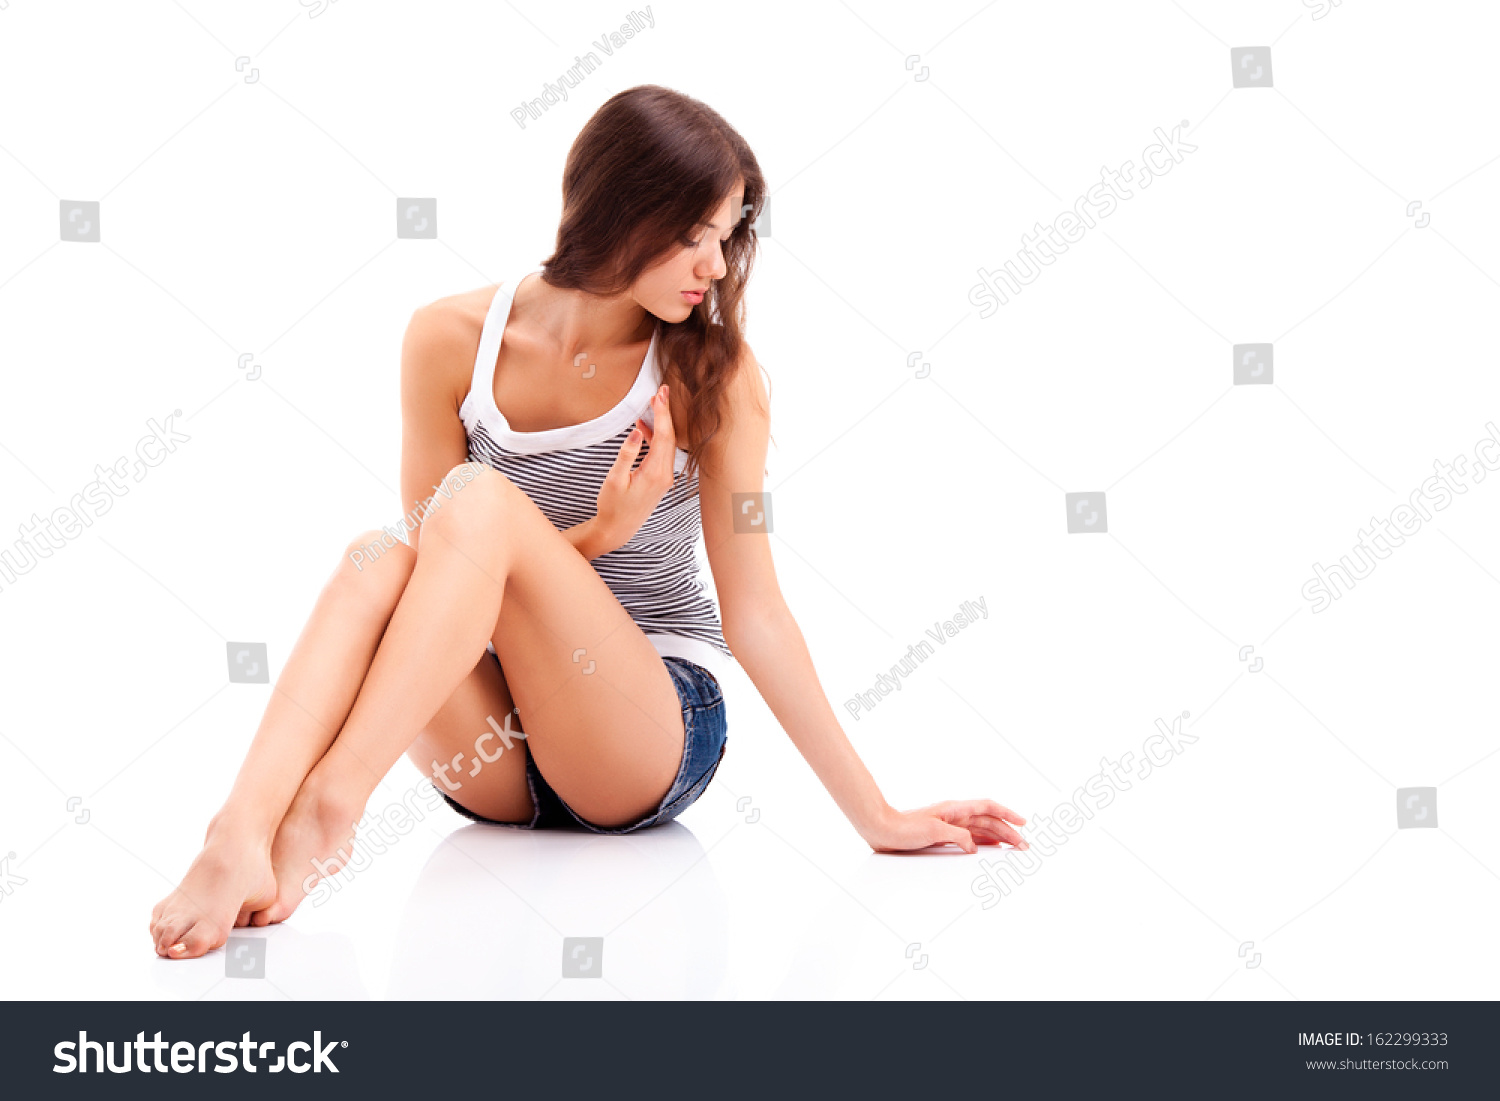 Девушка сидит на полу